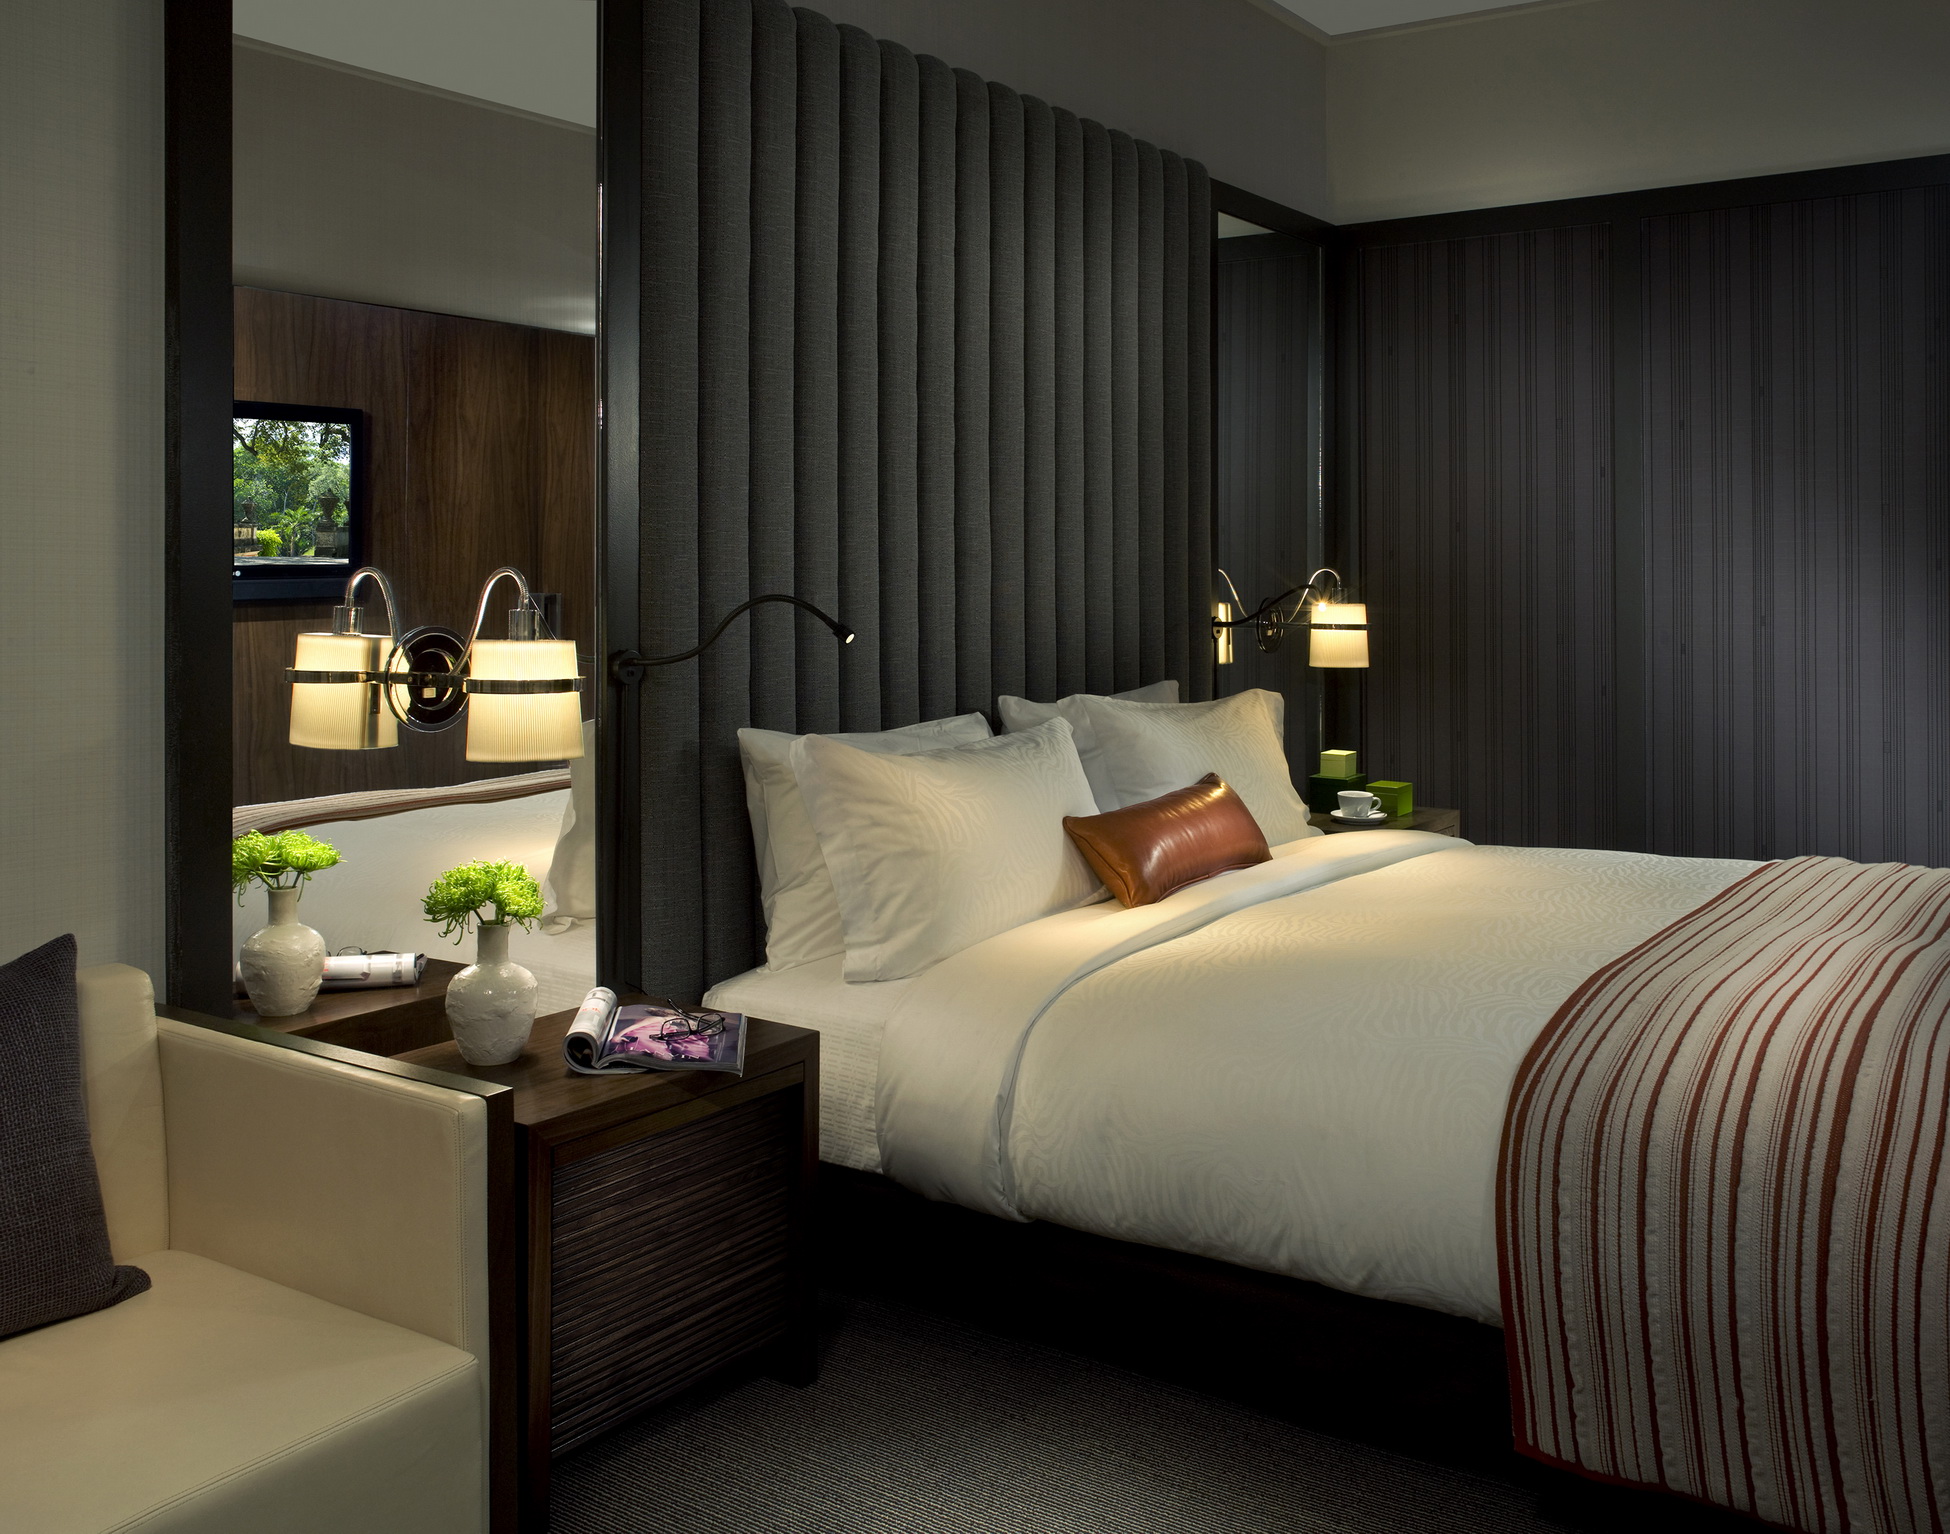 重庆精品酒店设计在灯饰选择上提供一些专业指导